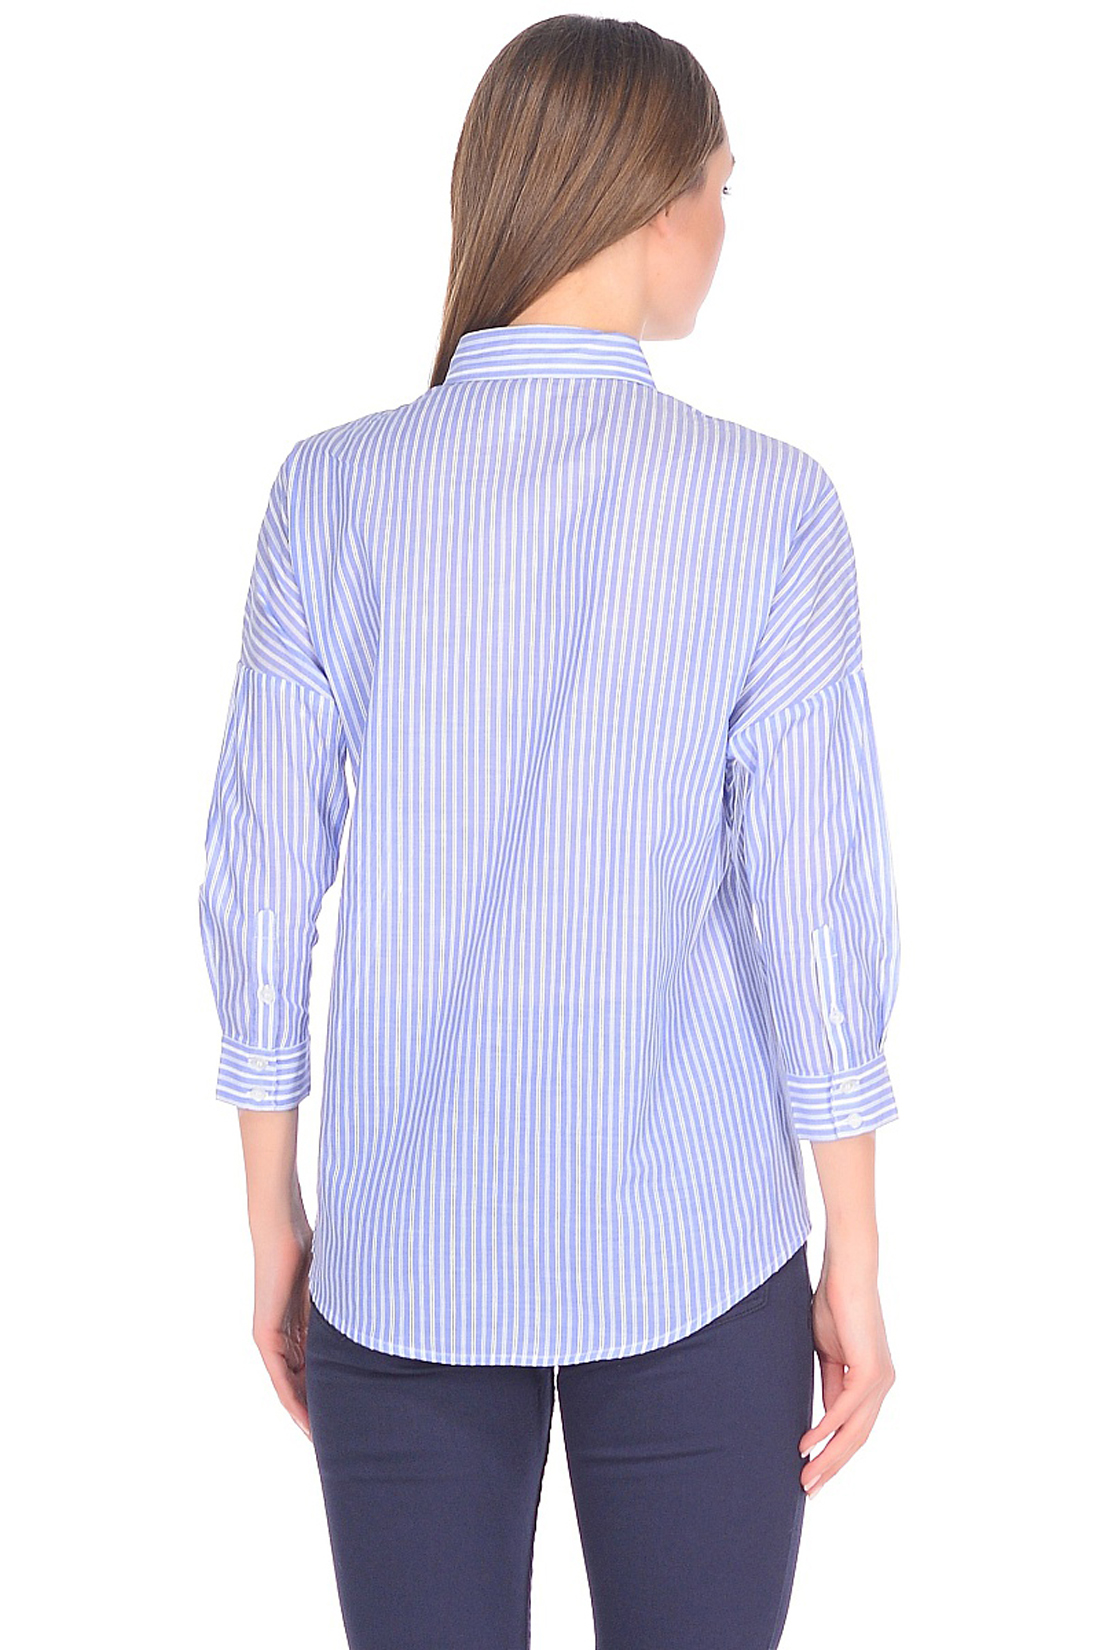 Рубашка свободного кроя (арт. baon B178014), размер XXL, цвет angel blue striped#голубой Рубашка свободного кроя (арт. baon B178014) - фото 2